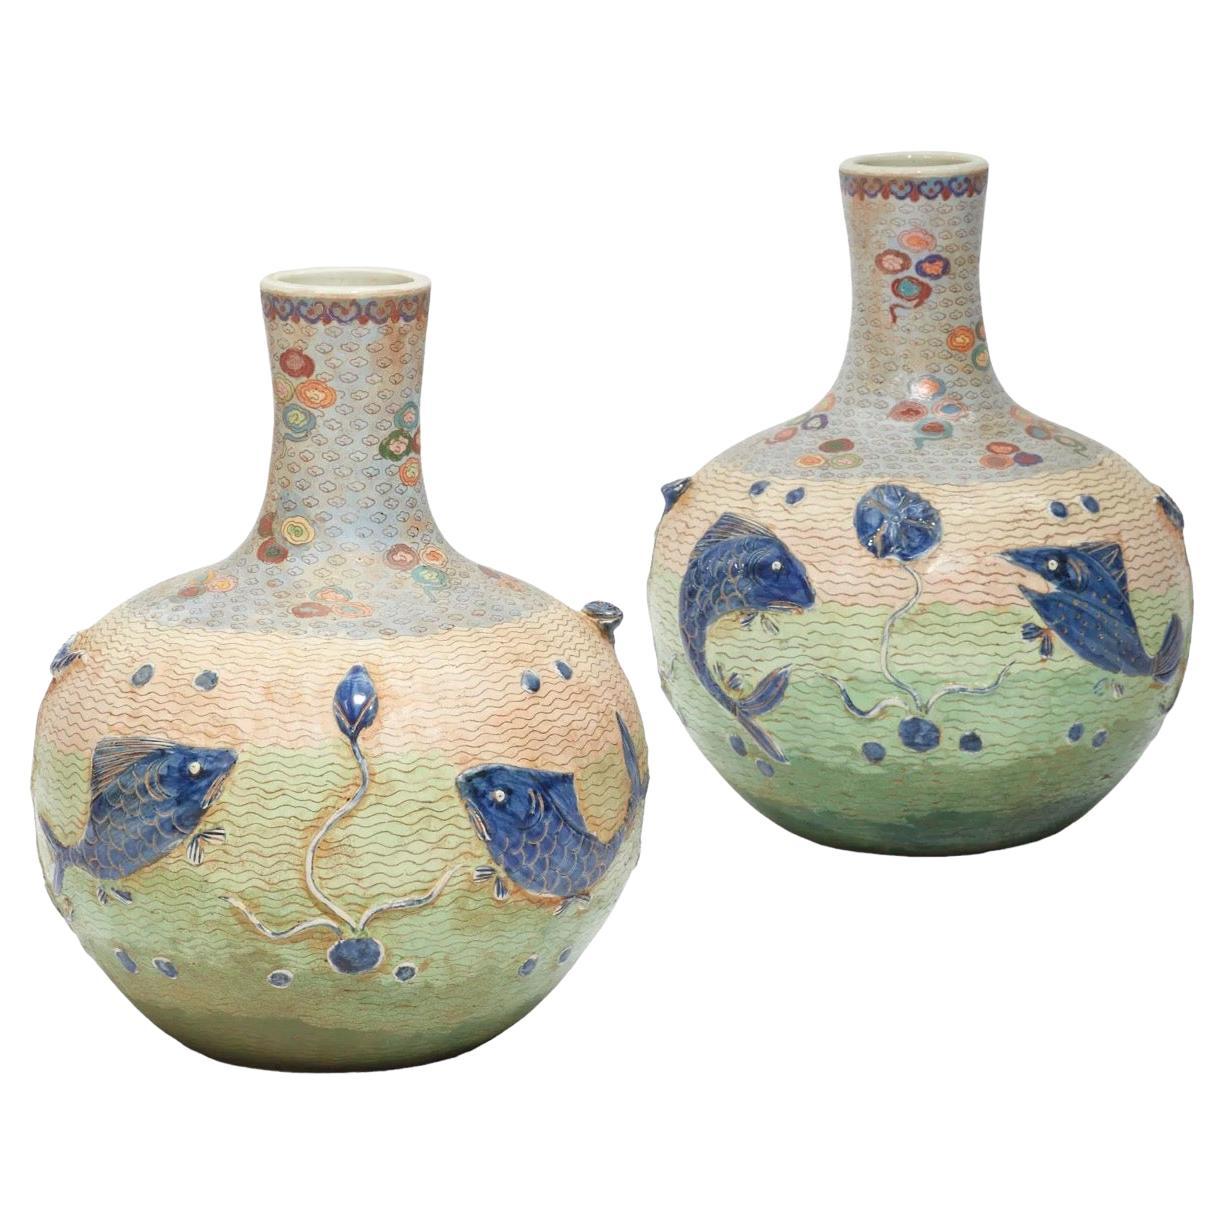 Paire de vases en porcelaine émaillée cloisonnée datant du début du 20e siècle (années 1900).